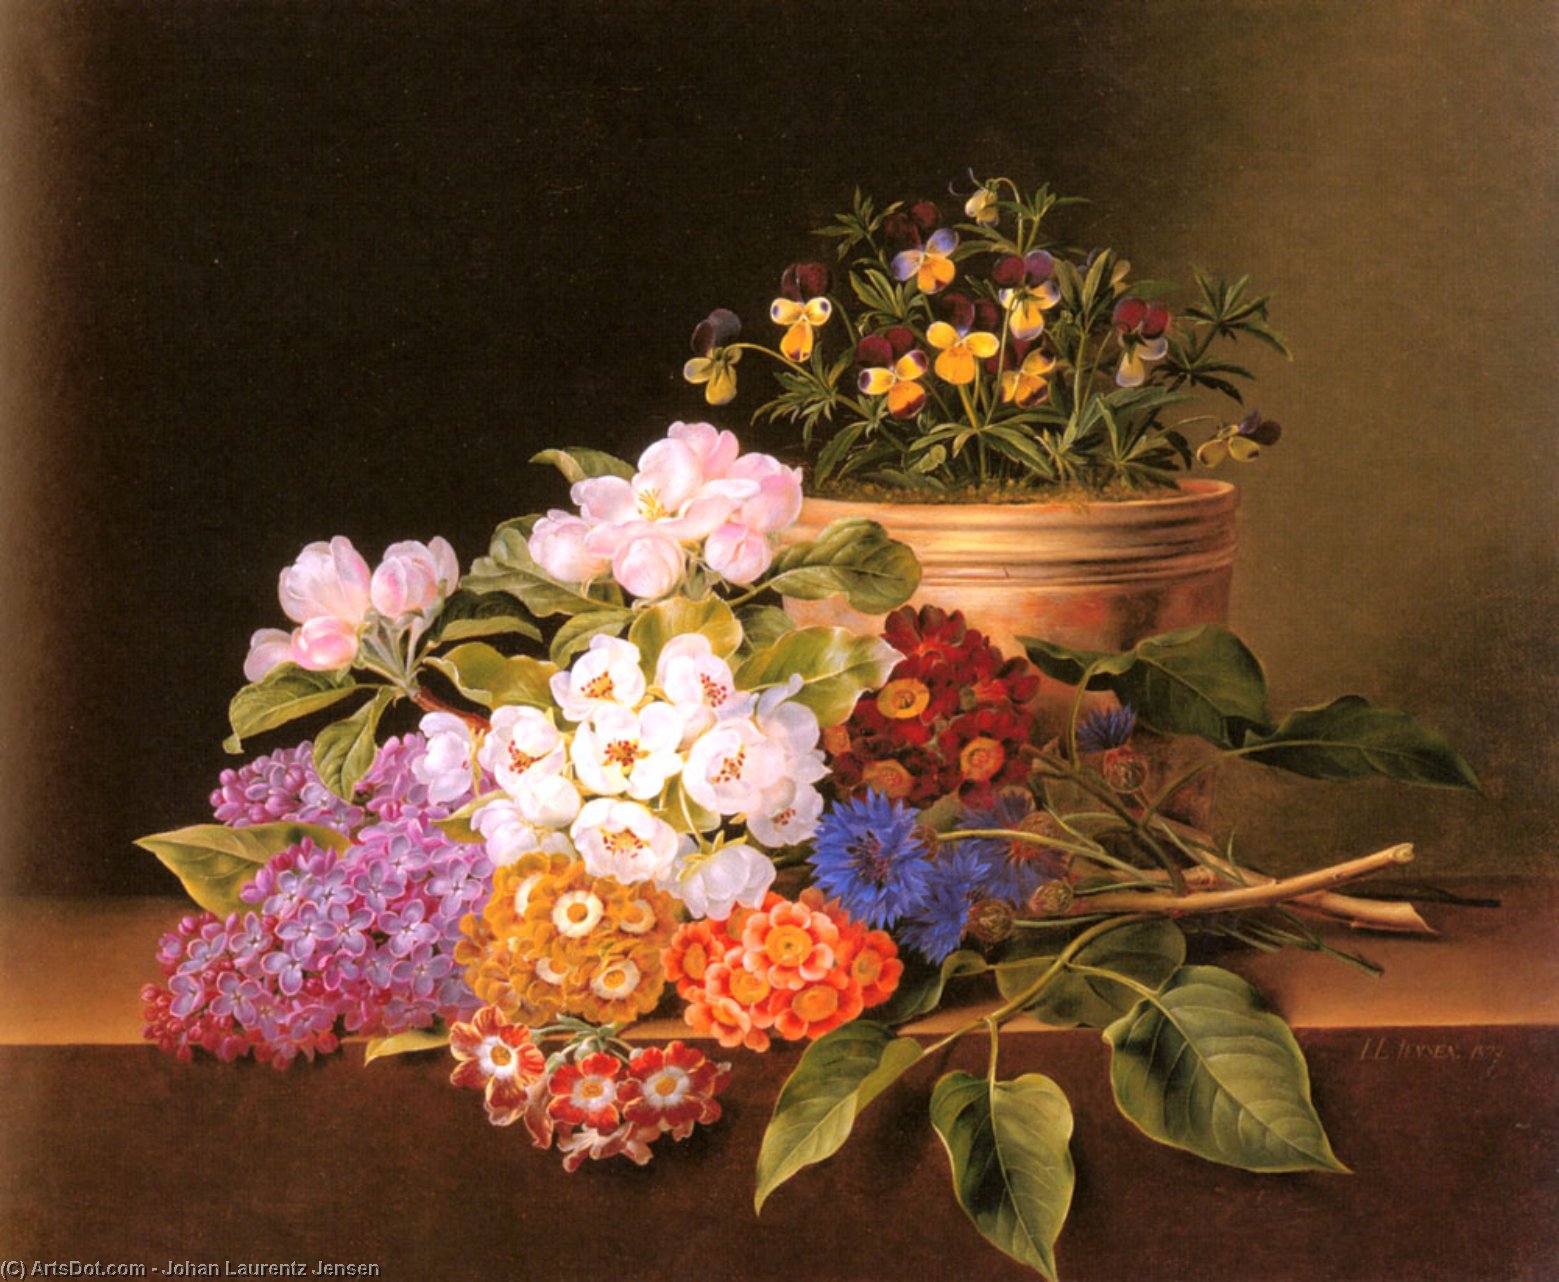 Wikioo.org - Bách khoa toàn thư về mỹ thuật - Vẽ tranh, Tác phẩm nghệ thuật Johan Laurentz Jensen - Apple Blossoms, Lilac, Violas, Cornflowers and Primroses on a Ledge